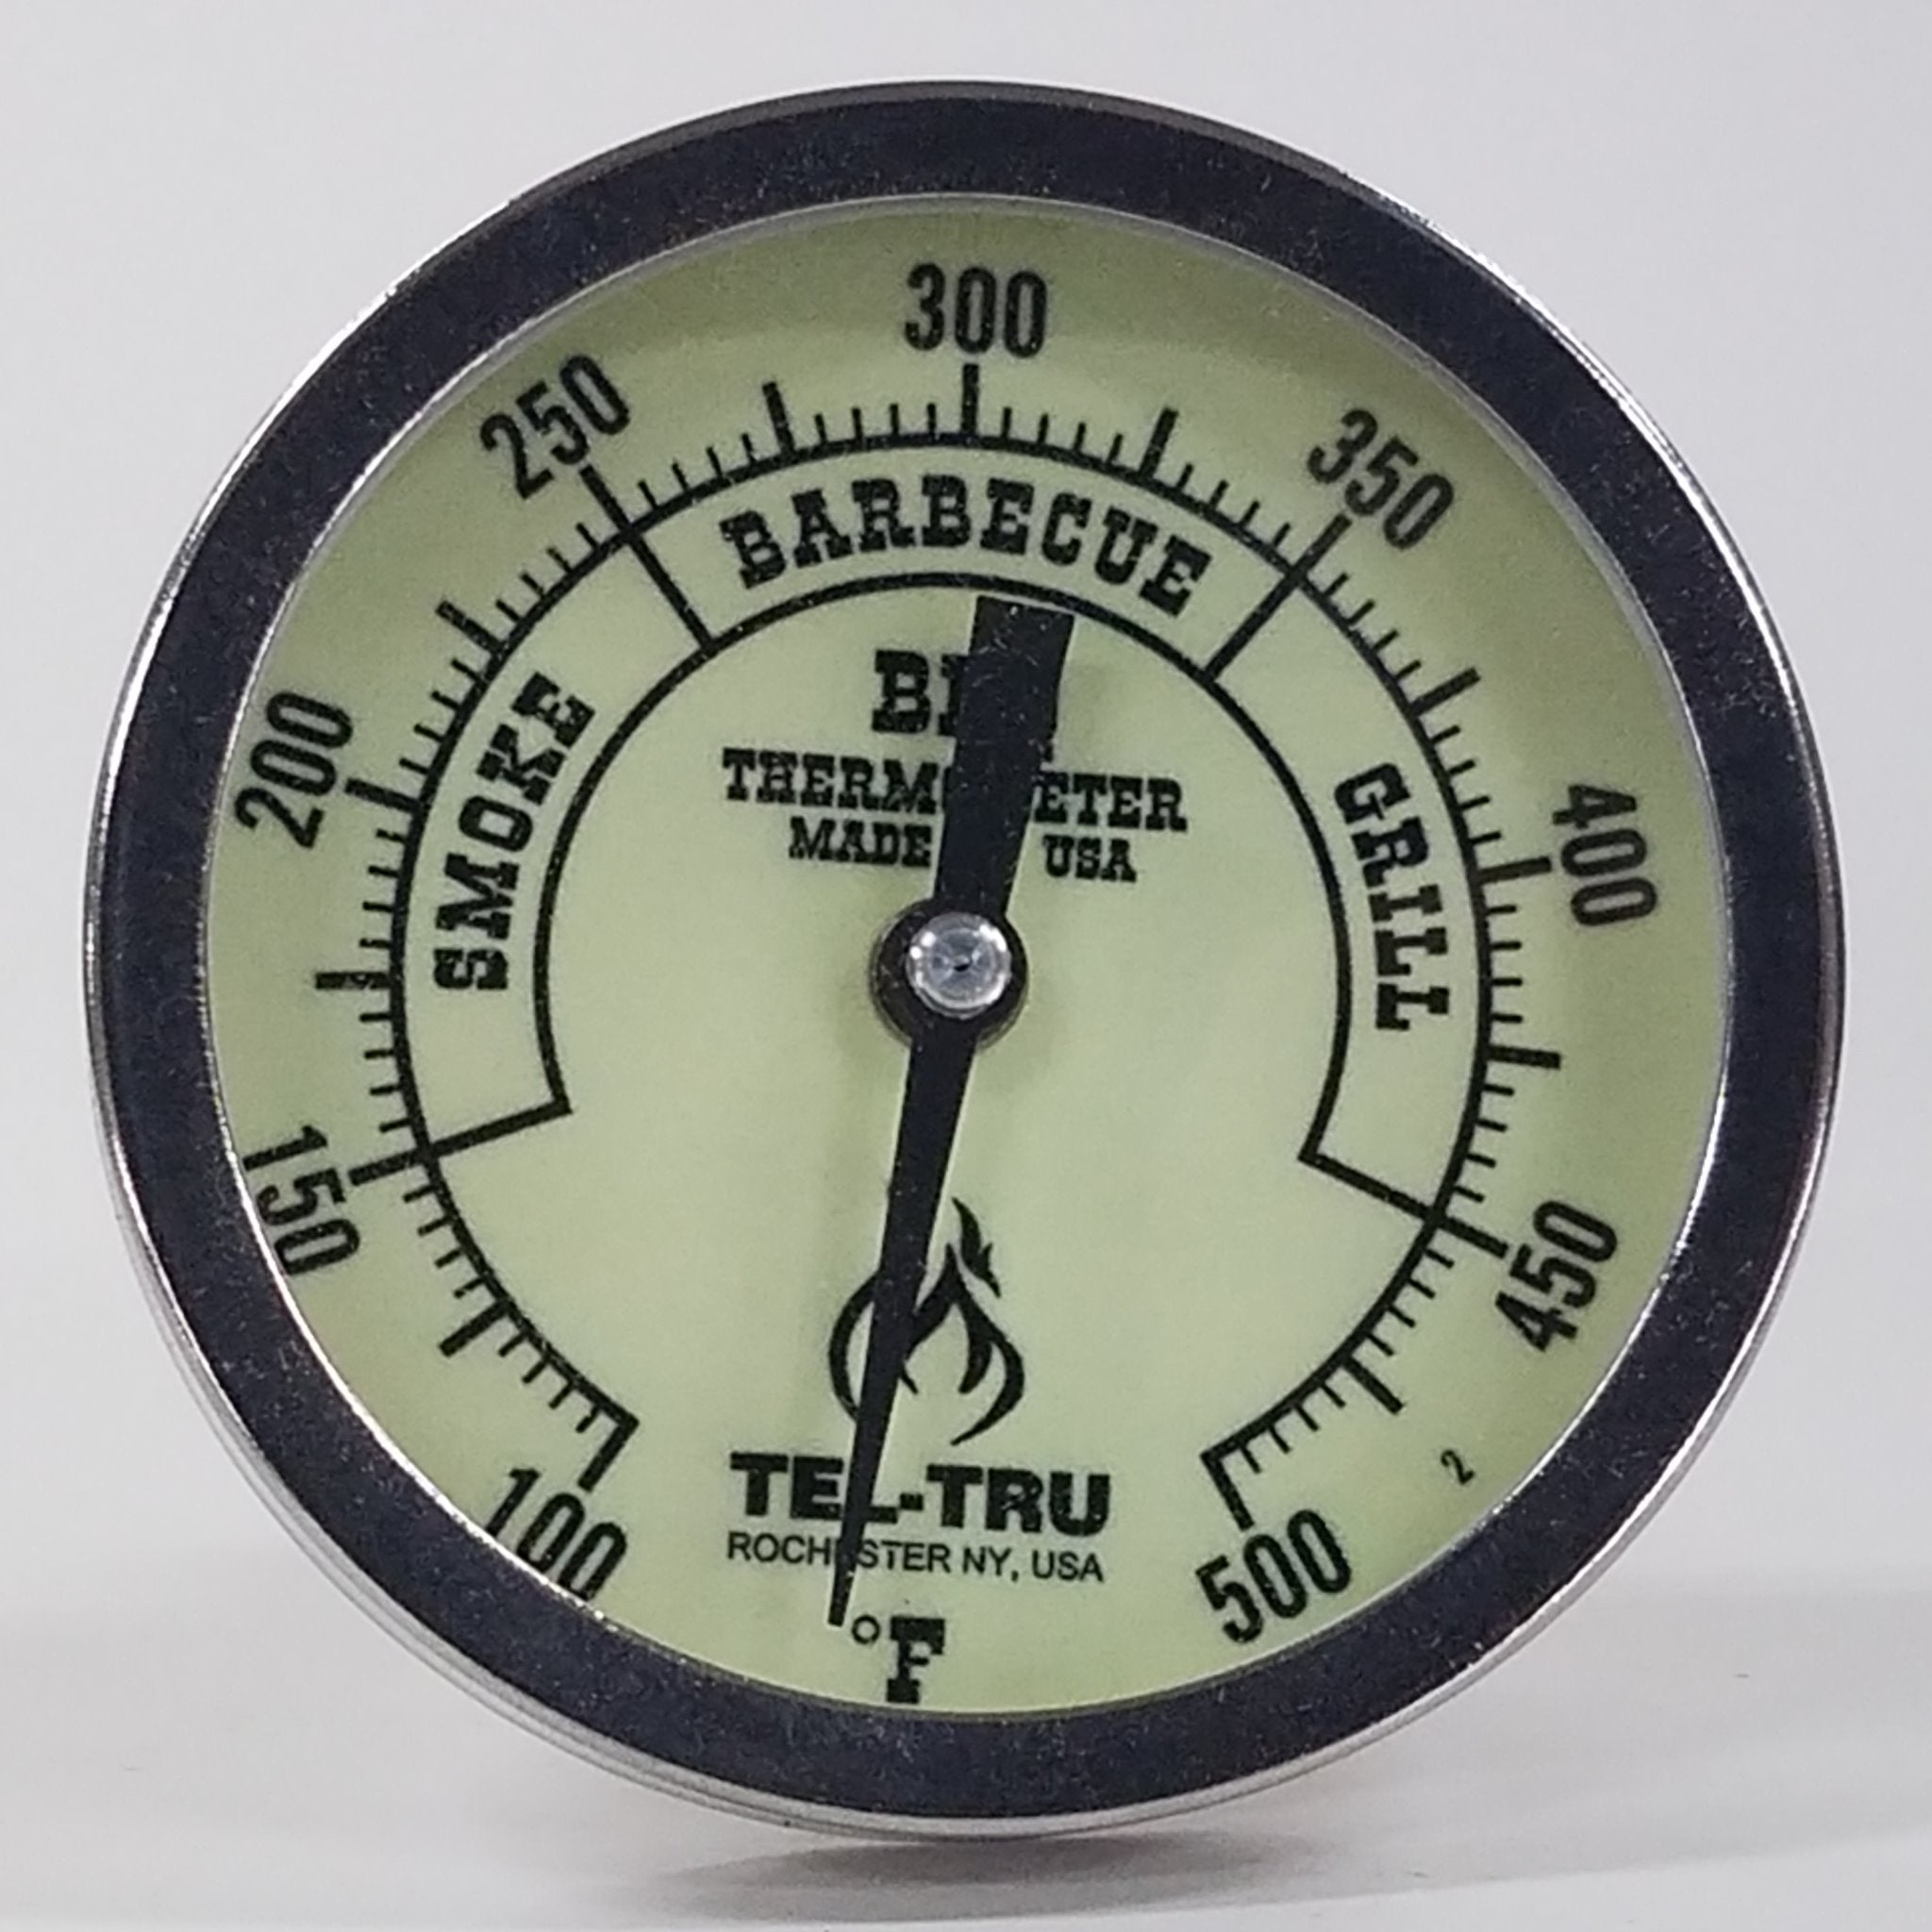 Tel-Tru BQ300 BBQ Grill & Smoker Thermometer 3 Glow in Dark Dial